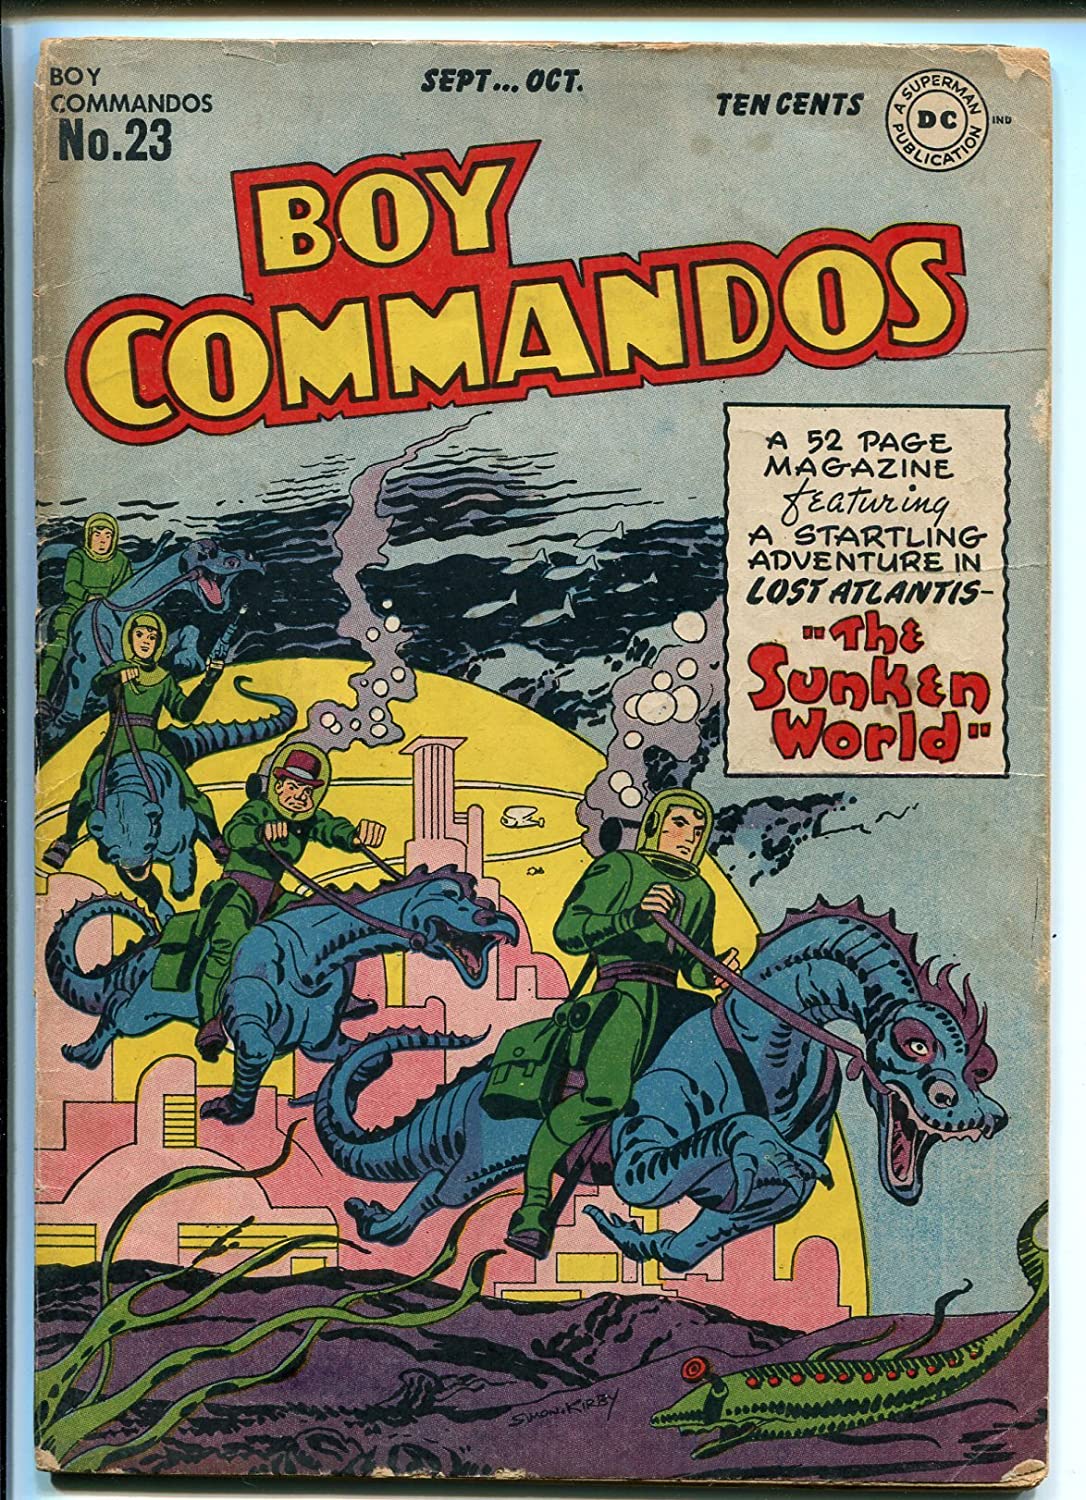 Комикс “Boy Commandos”, №23, 1947 г. DC Comics.